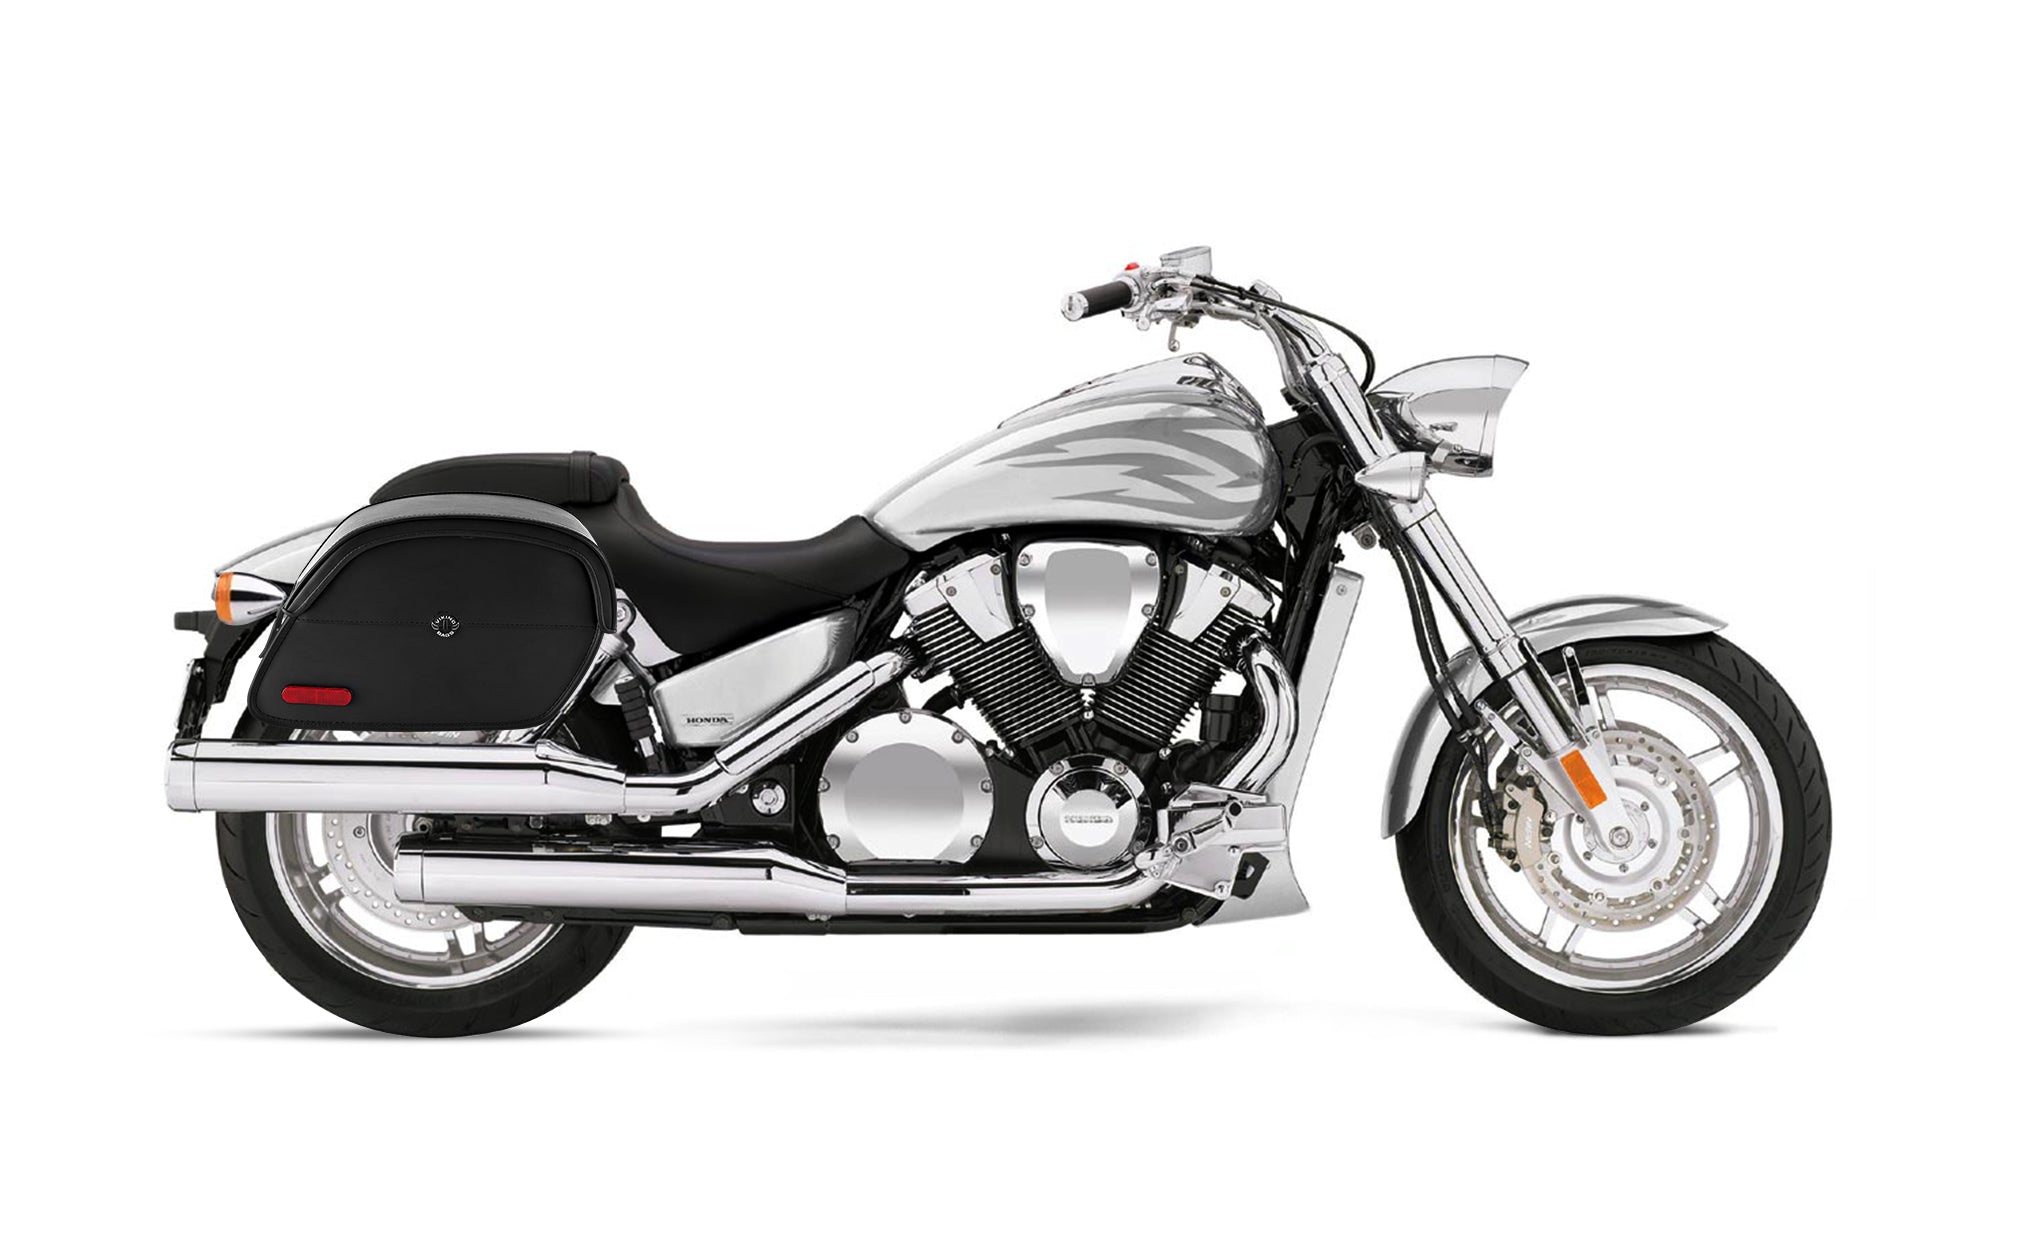 Viking California Large Honda Vtx 1800 F Leather Motorcycle Saddlebags on Bike Photo @expand